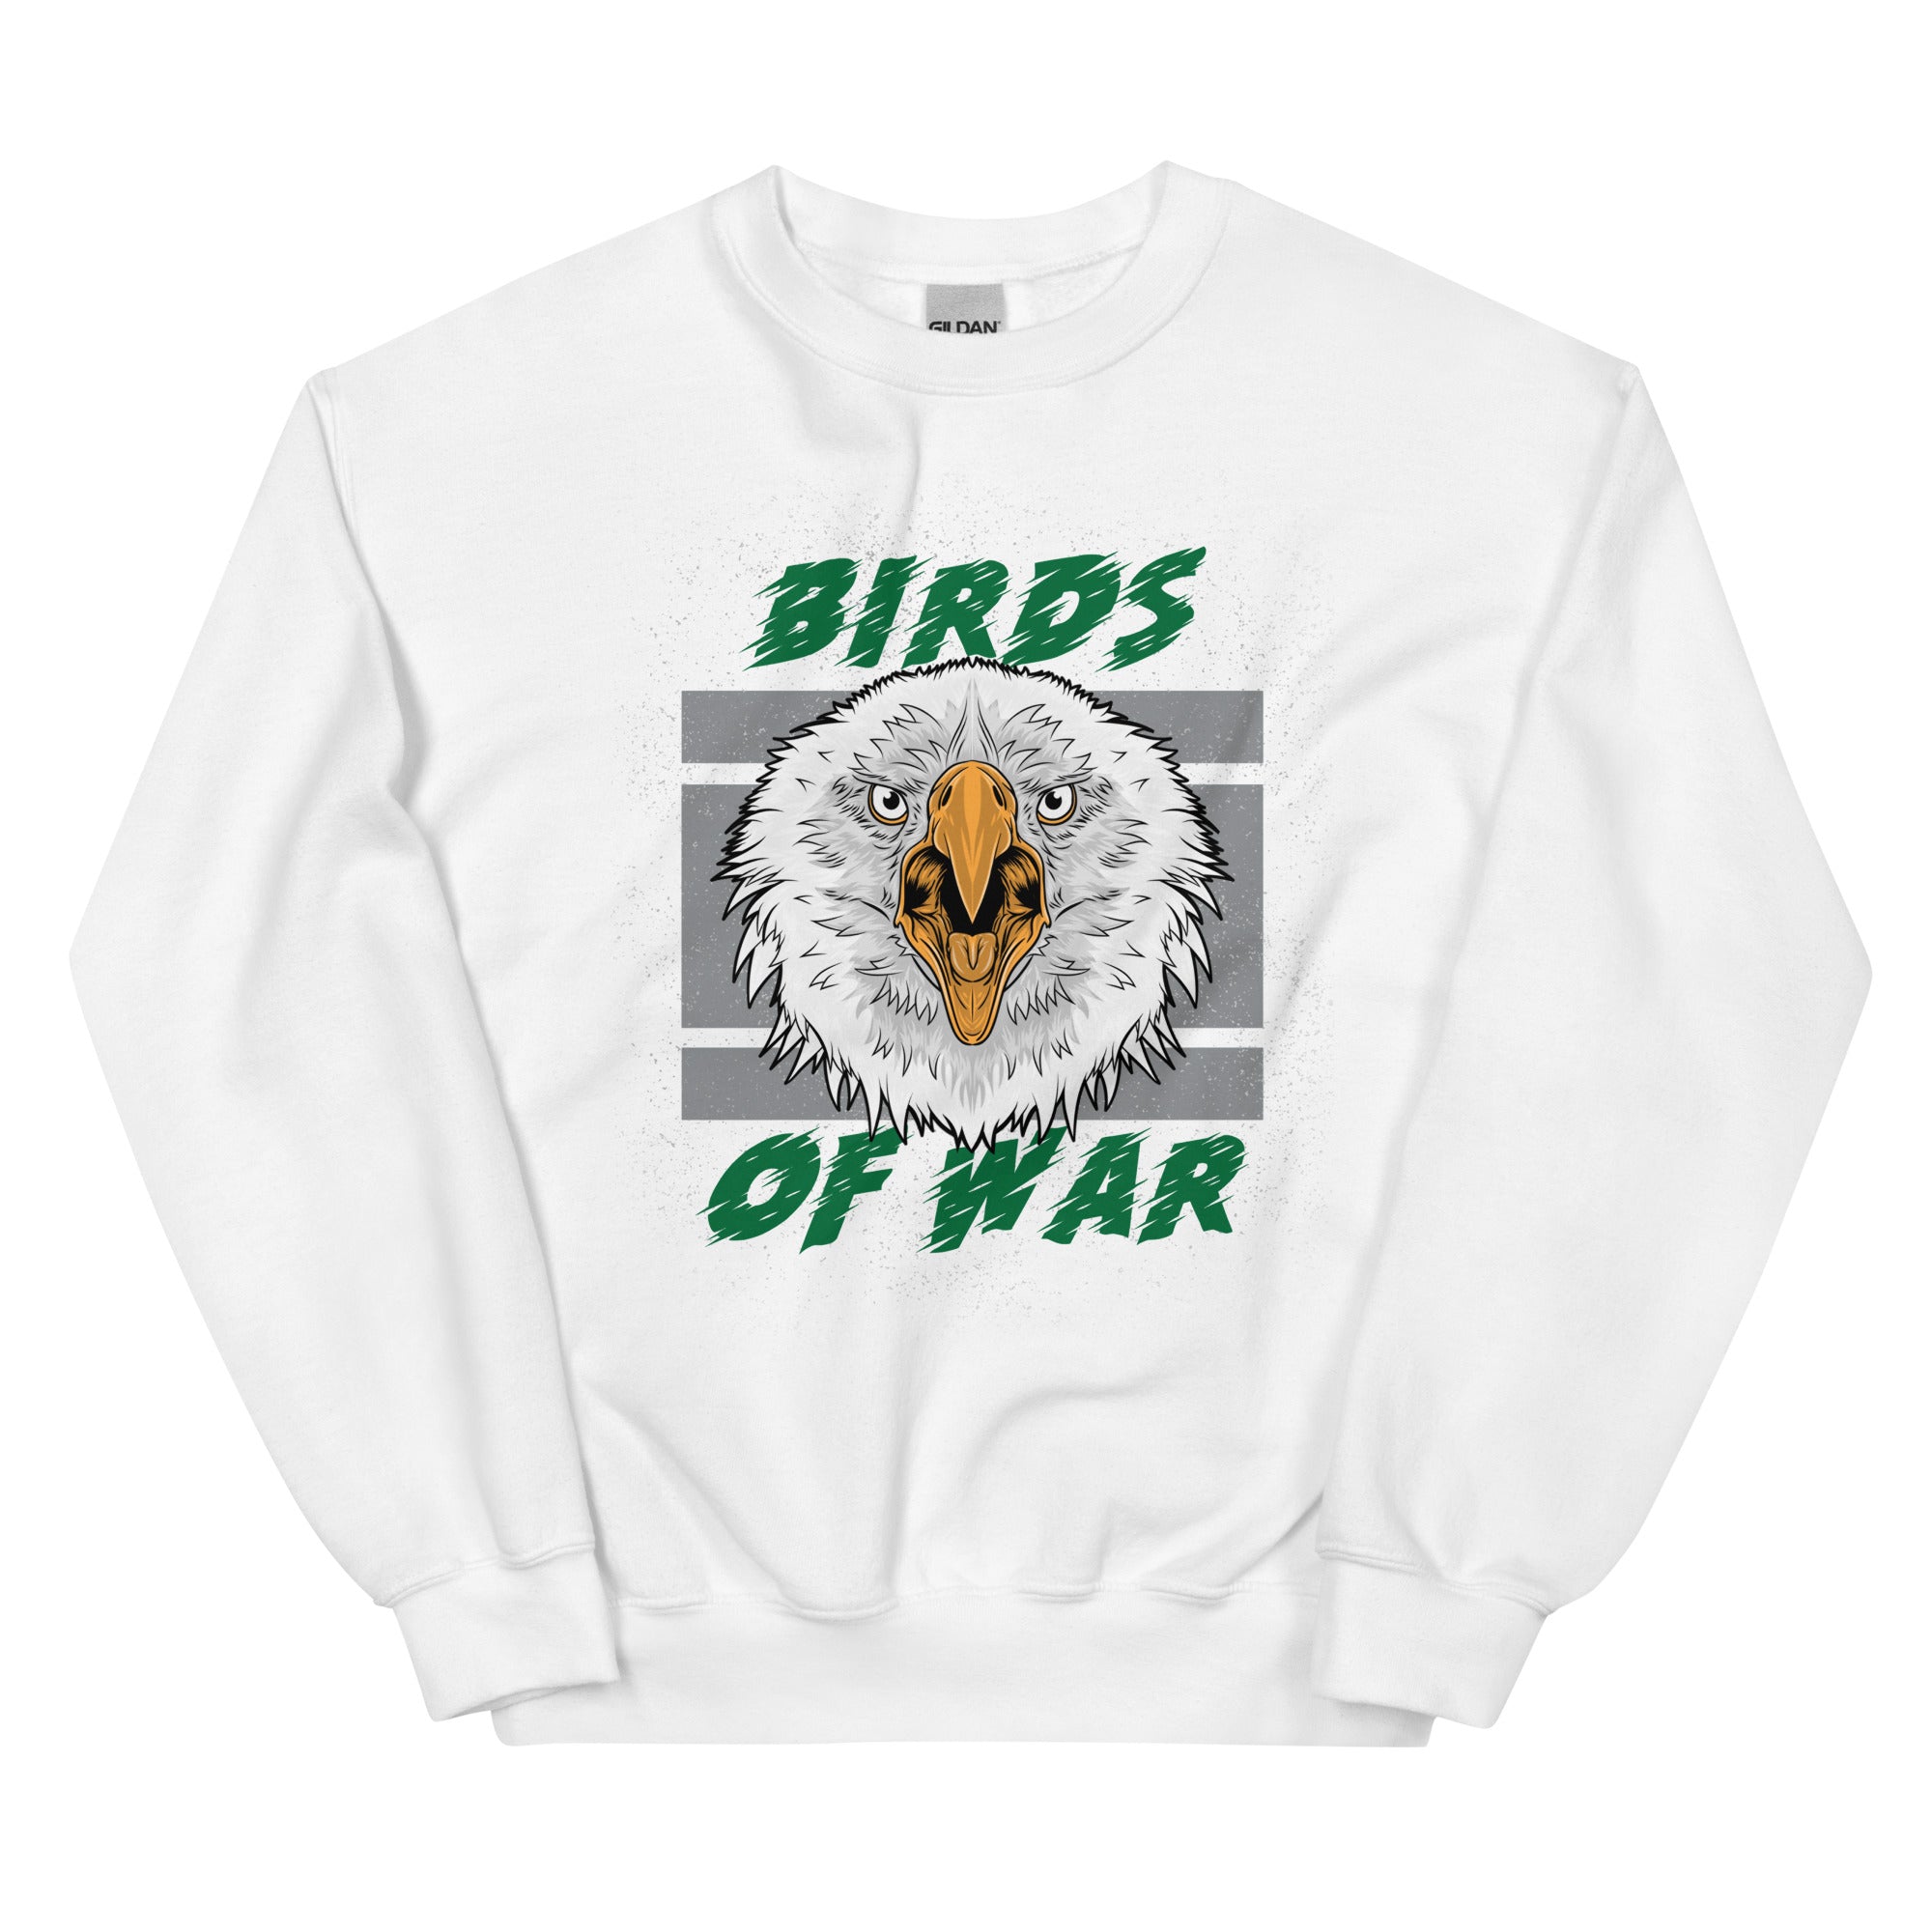 "Birds of War" Sweatshirt